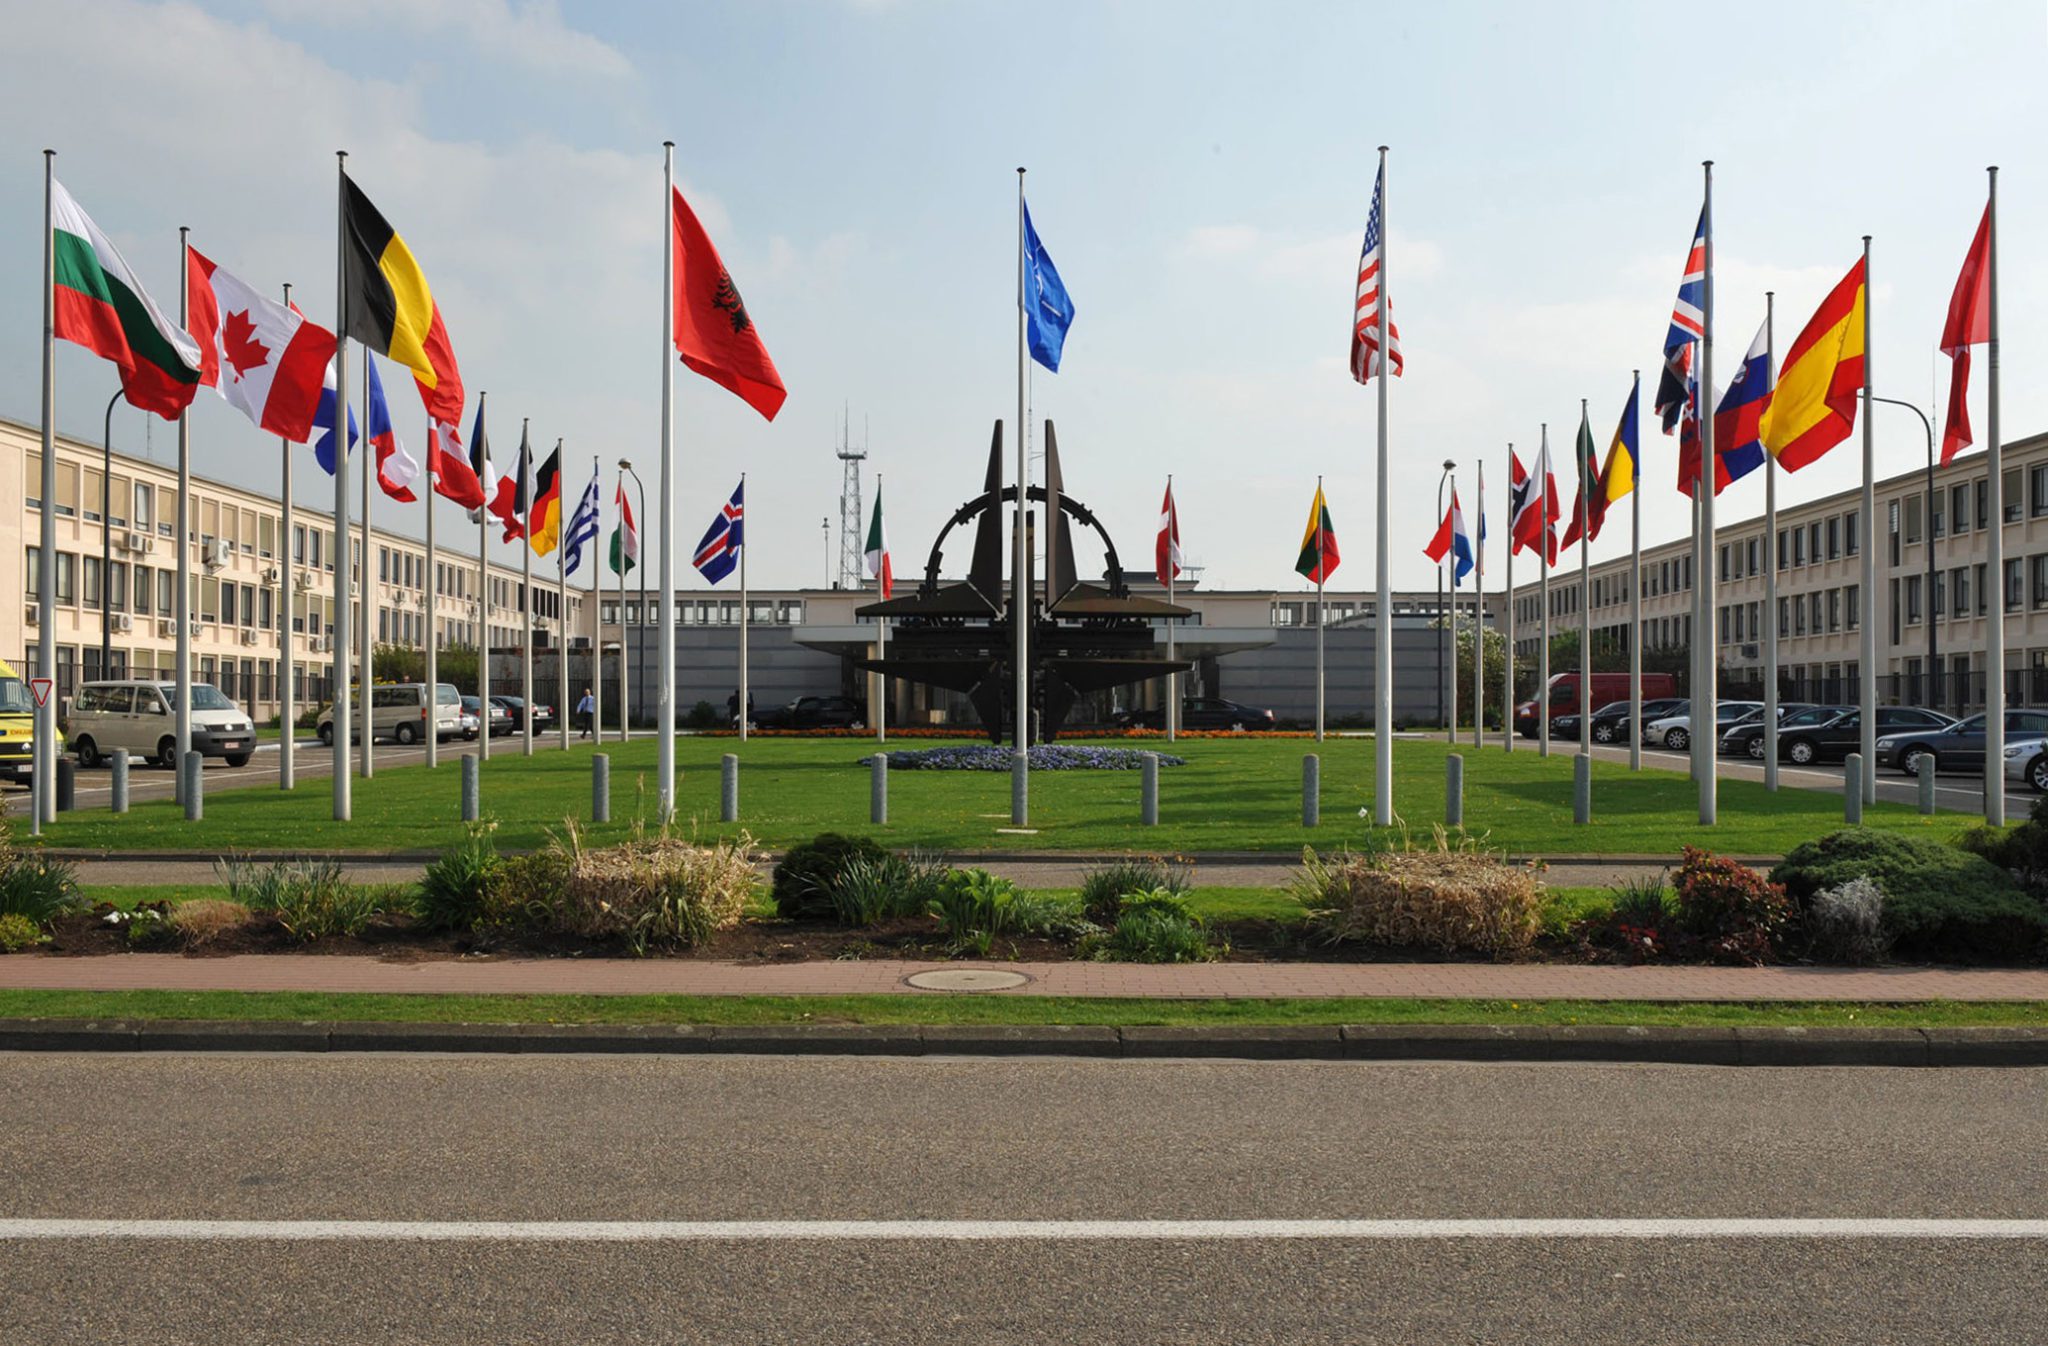 Interoperabilità, il core business della NATO (II)